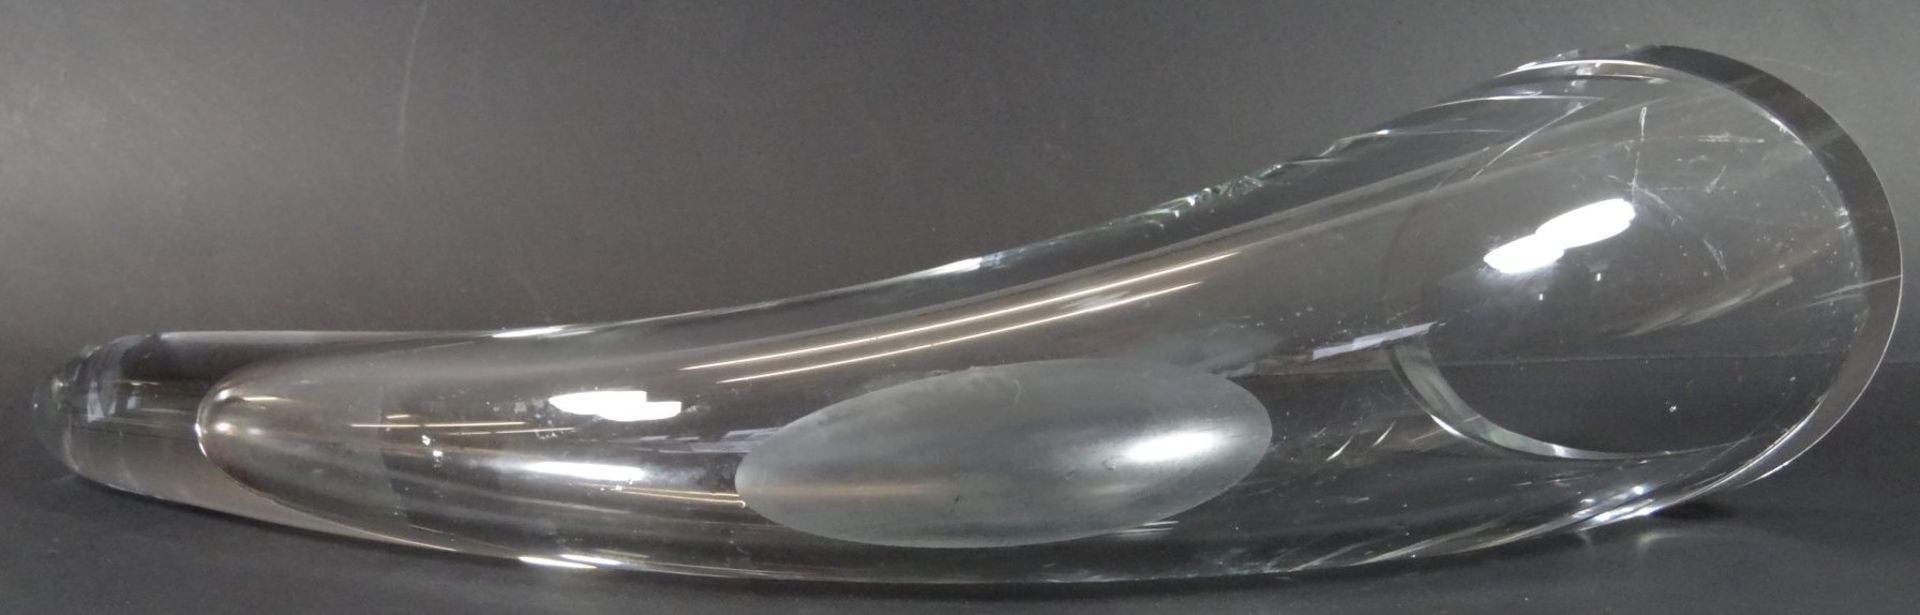 Kristall-Trinkhorn, Gebrauchsspuren, L-40 cm - Bild 3 aus 3